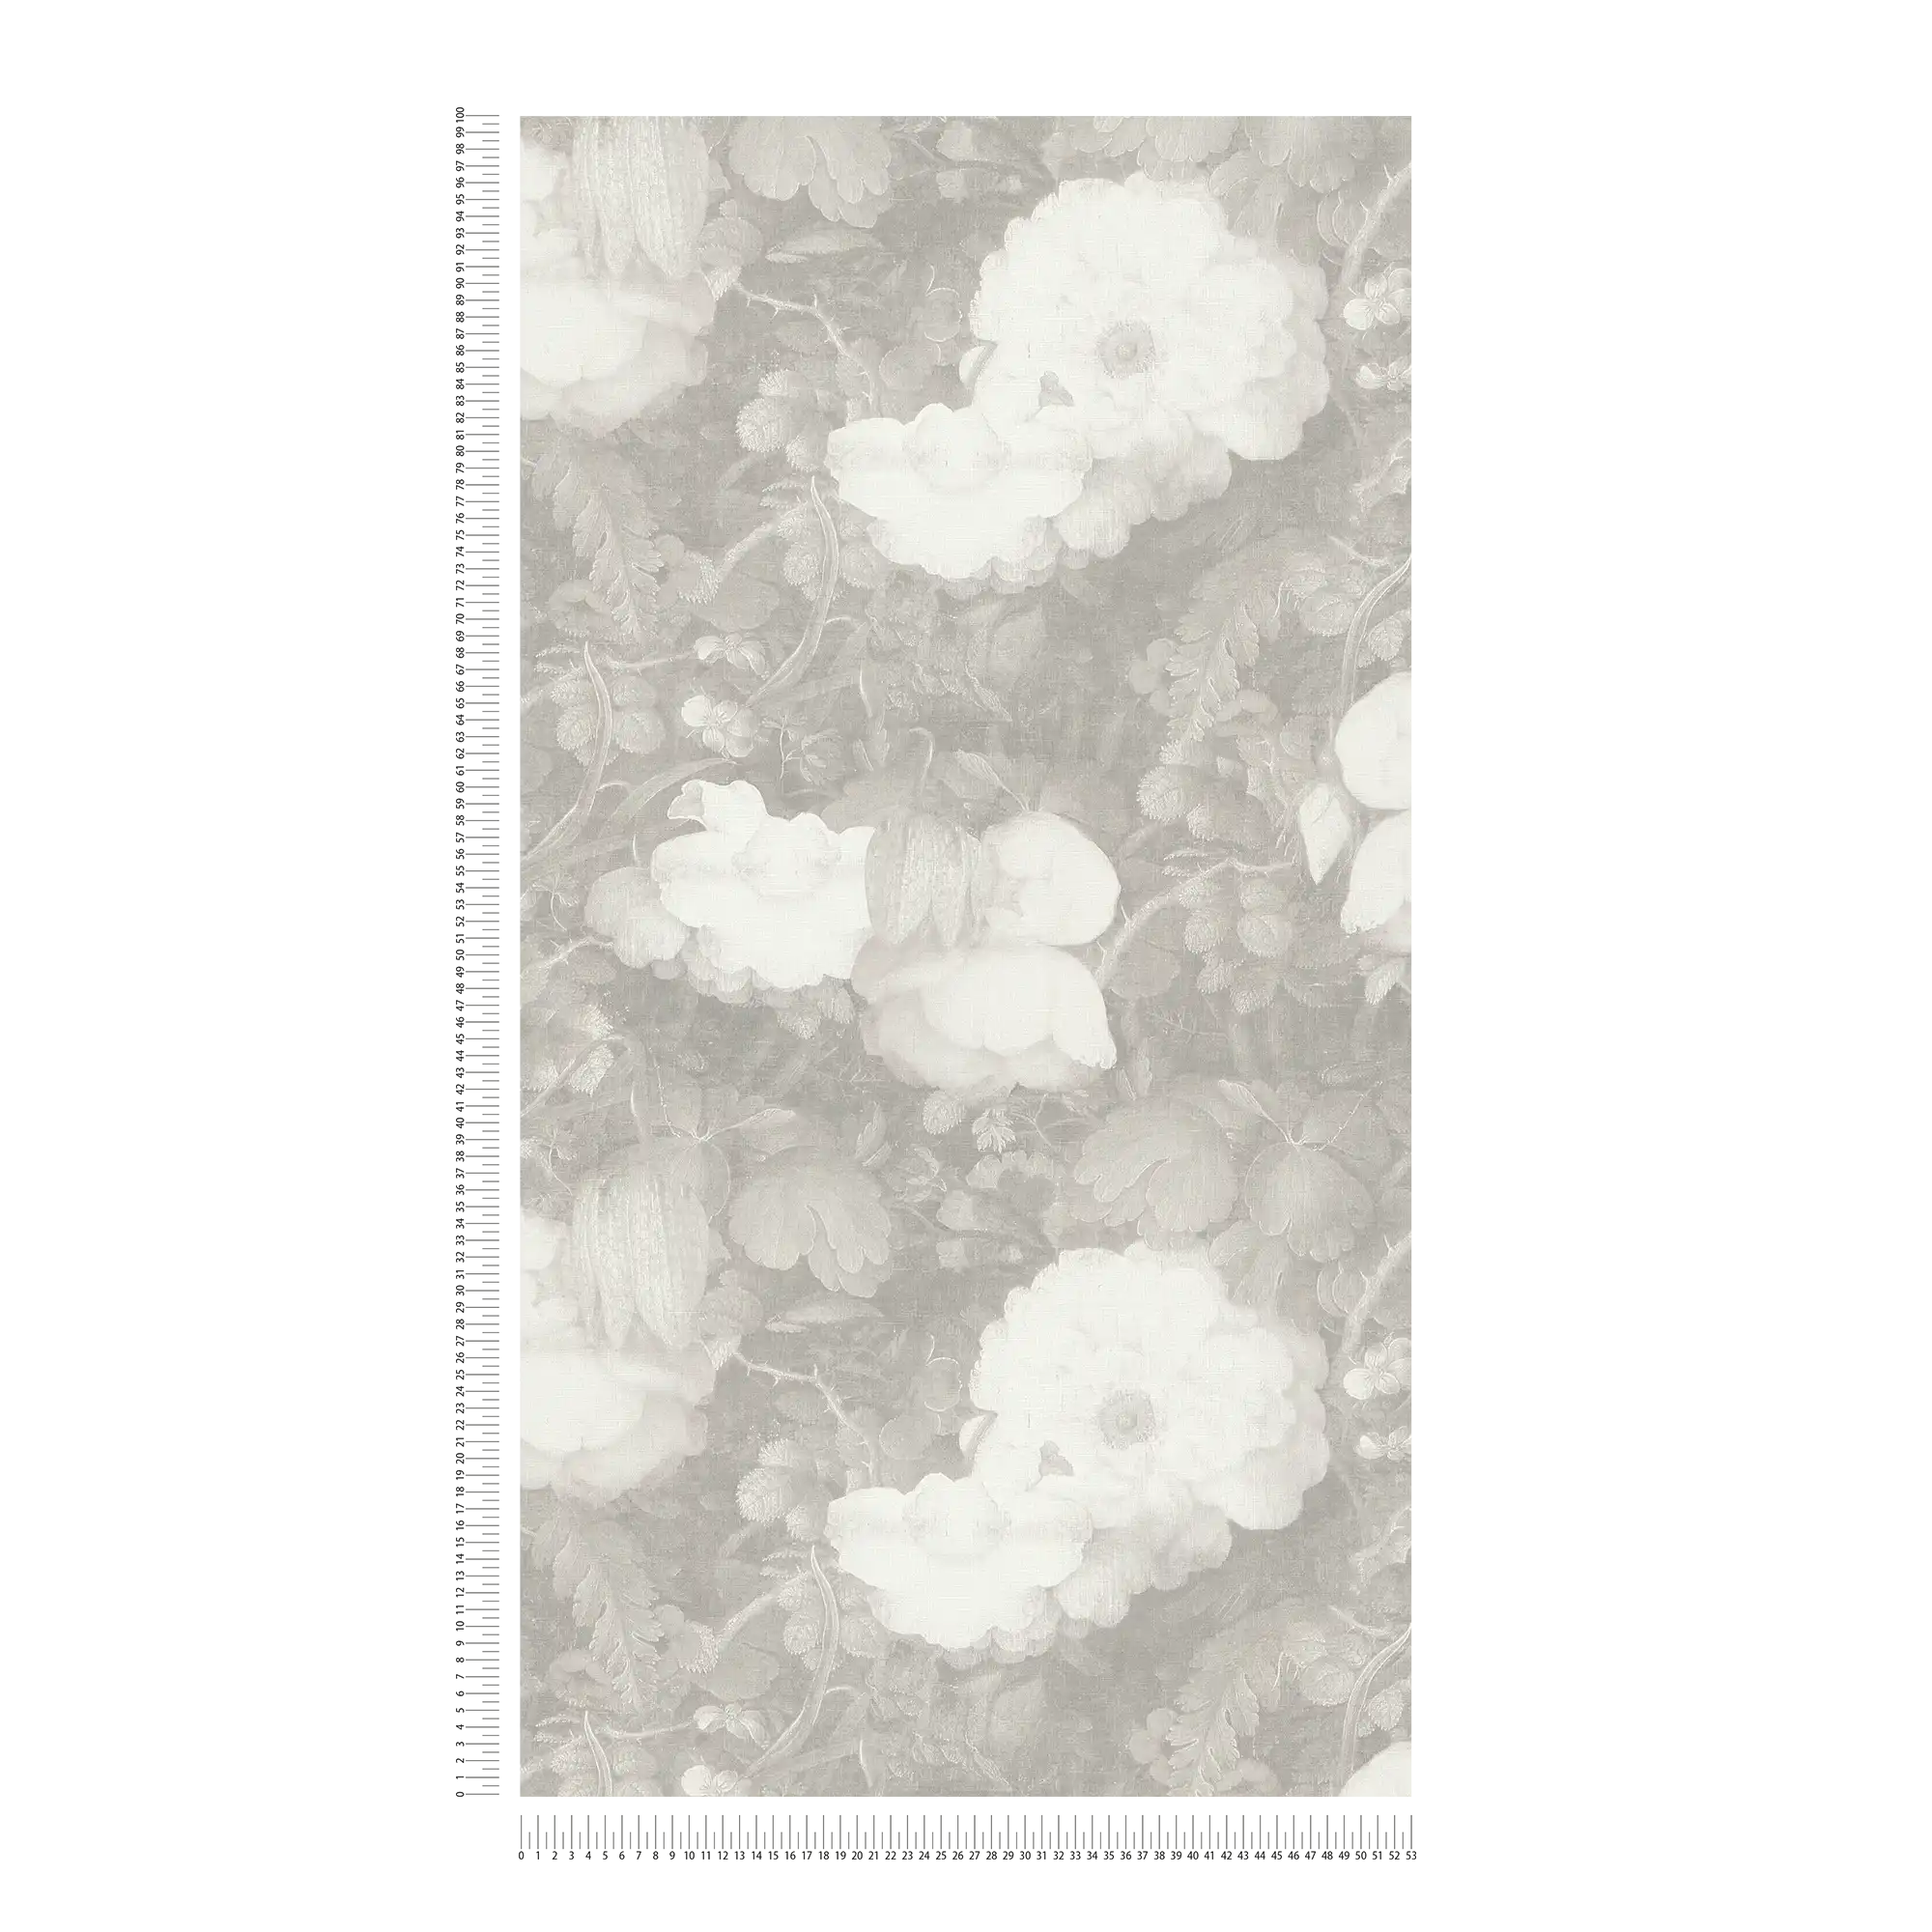             Carta da parati floreale in stile pittura, aspetto tela - grigio, bianco
        